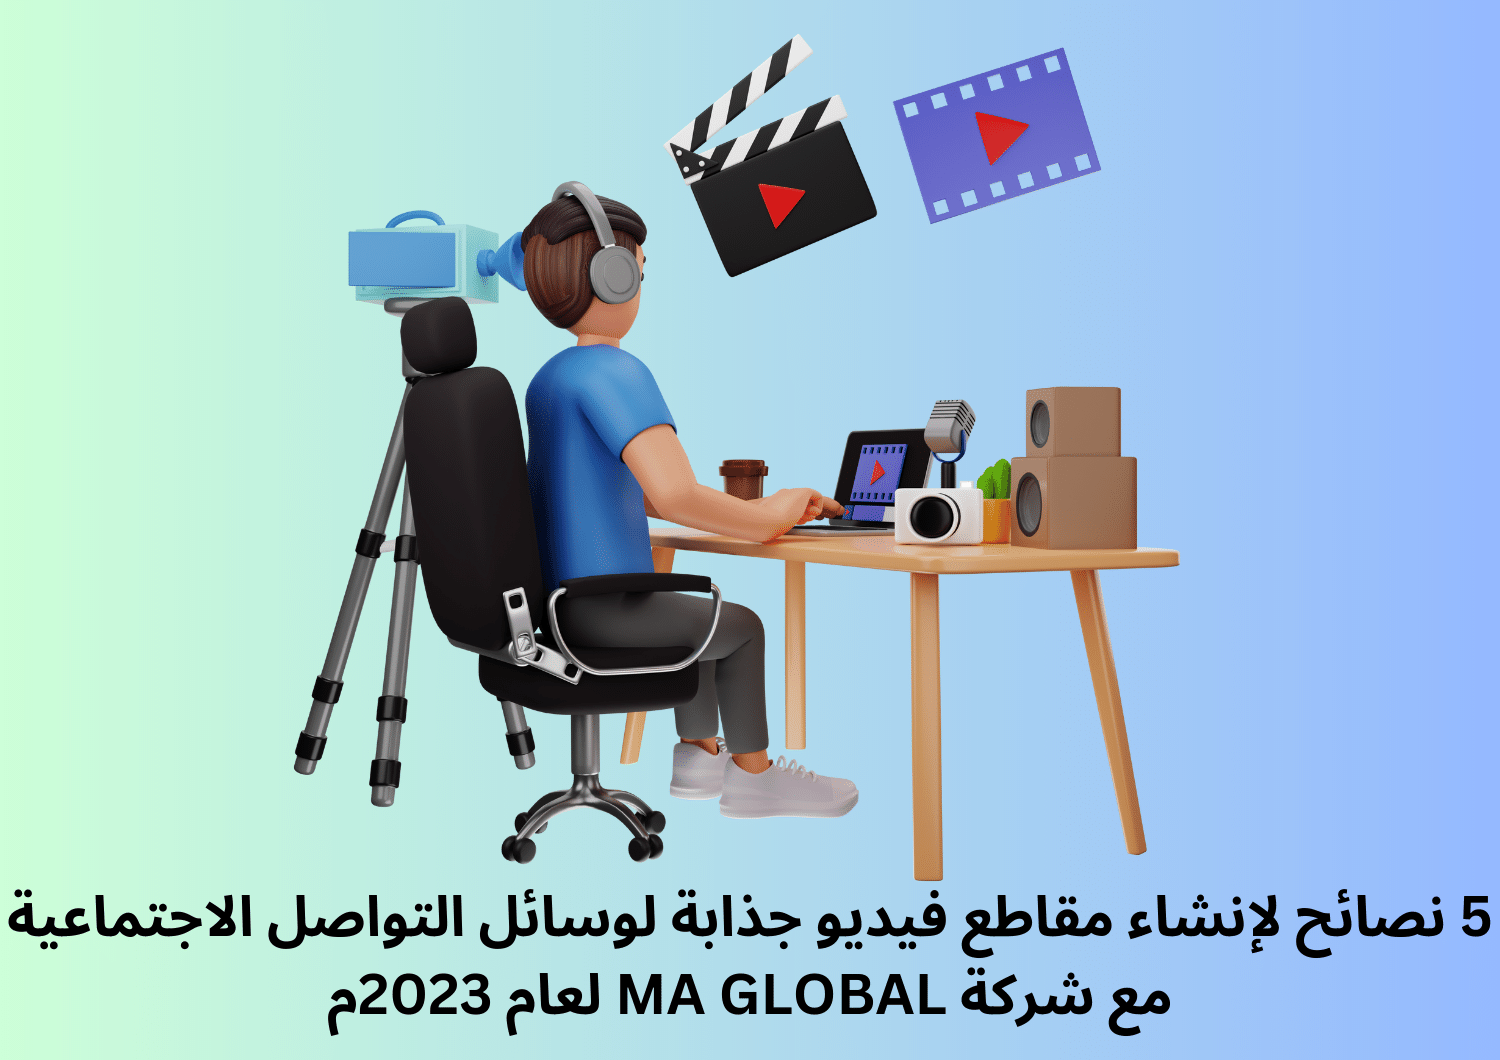 5 نصائح لإنشاء مقاطع فيديو جذابة لوسائل التواصل الاجتماعية مع شركة MA GLOBAL لعام 2023م